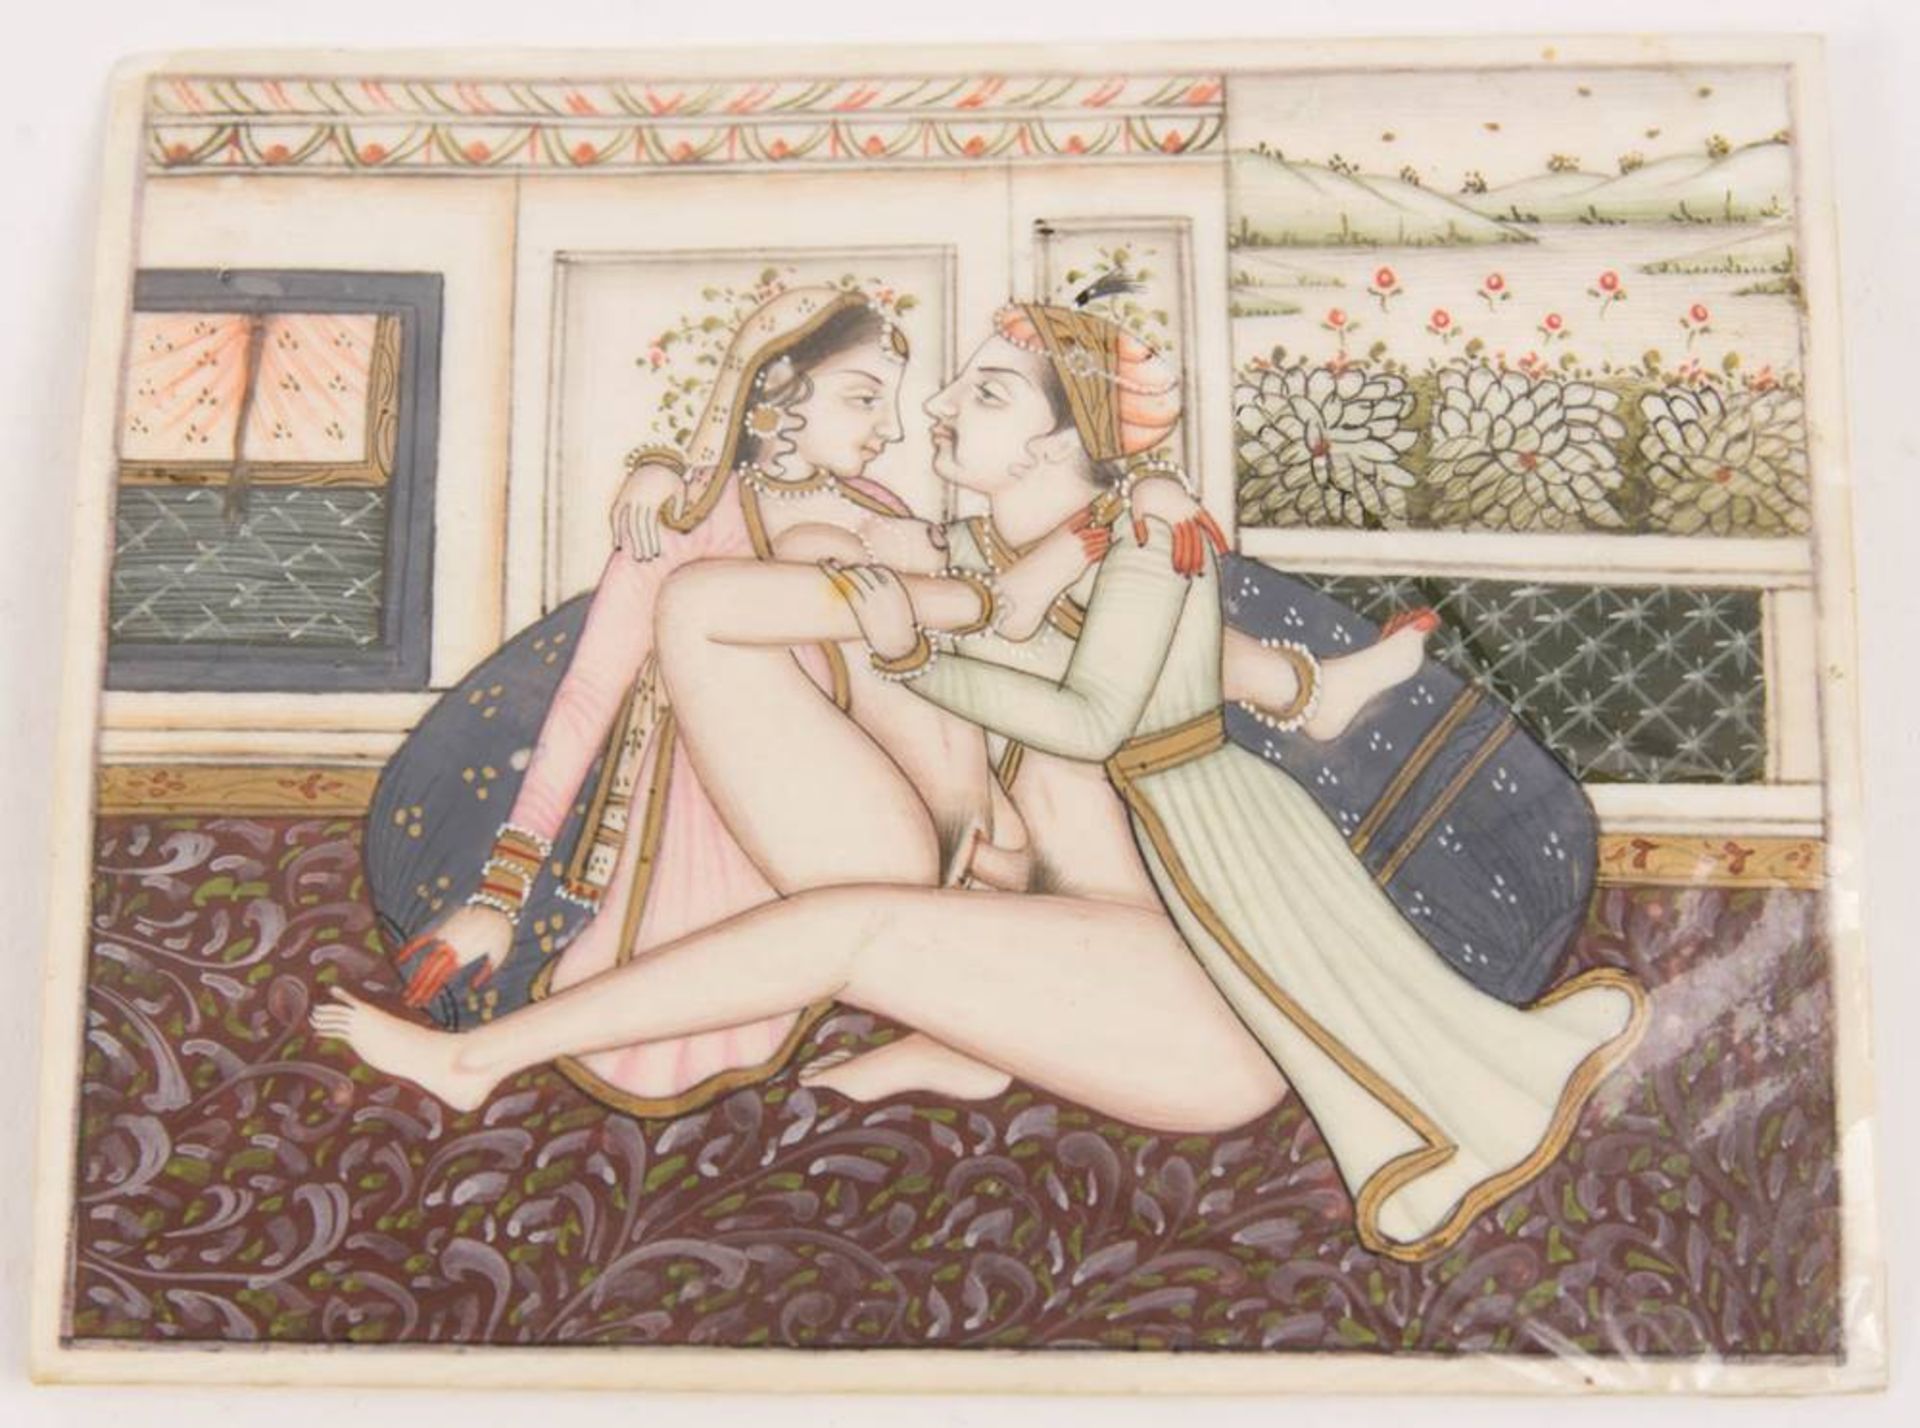 Zwei erotische Miniaturen, Tempera auf Elfenbein, Indien, 19. / 20. Jh. - Bild 2 aus 7